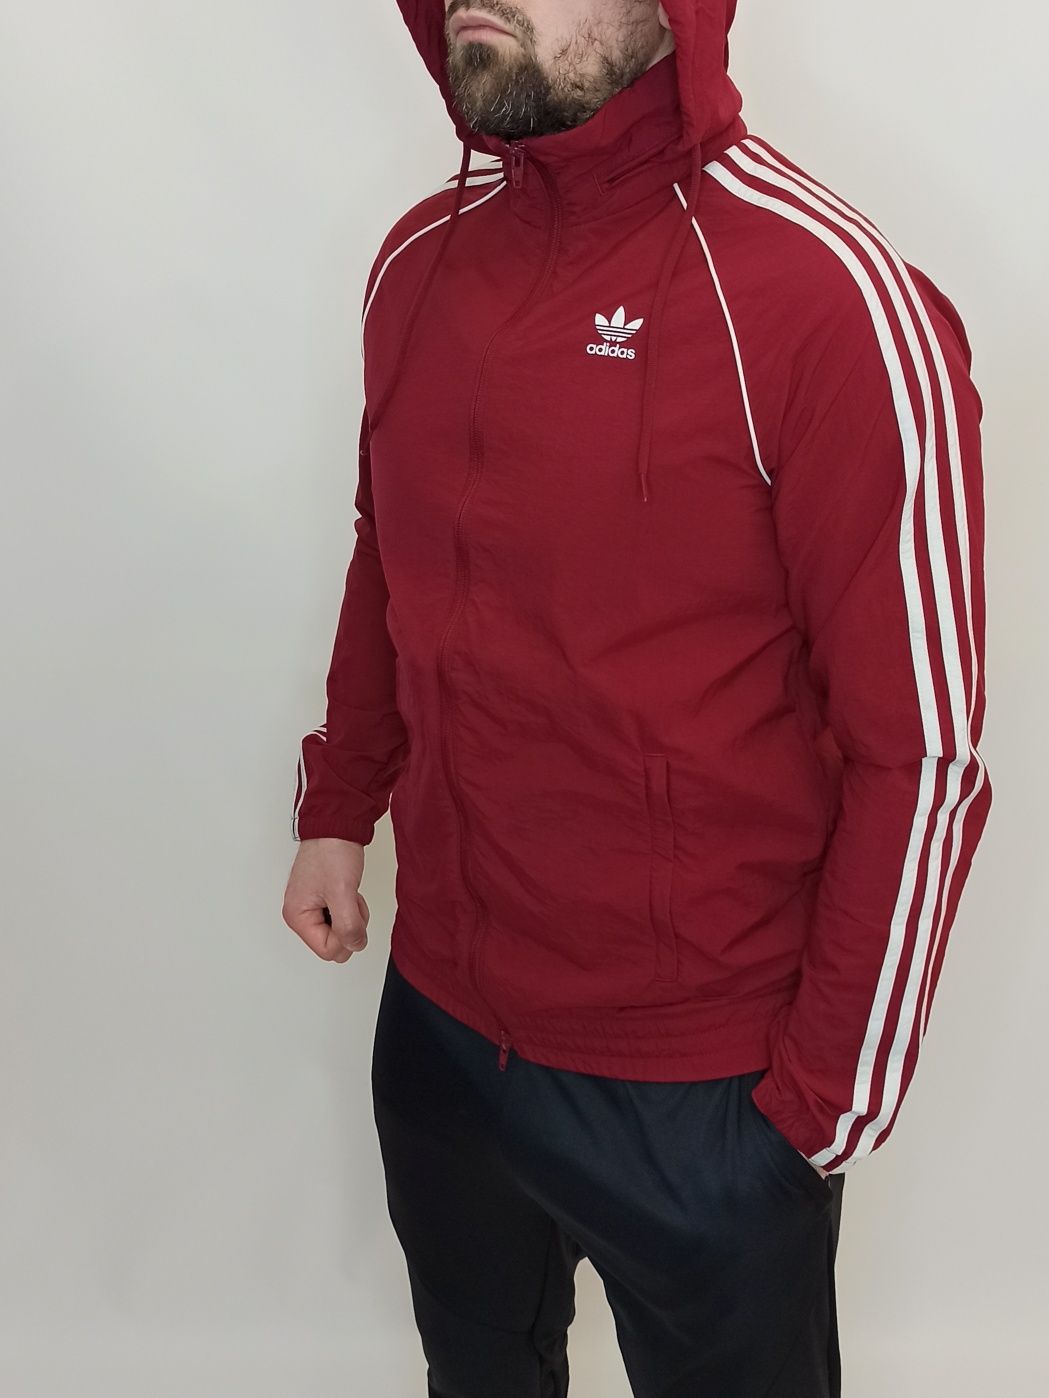 Кофта олимпийка спортивная мужская бордовая Adidas. Размер - S.